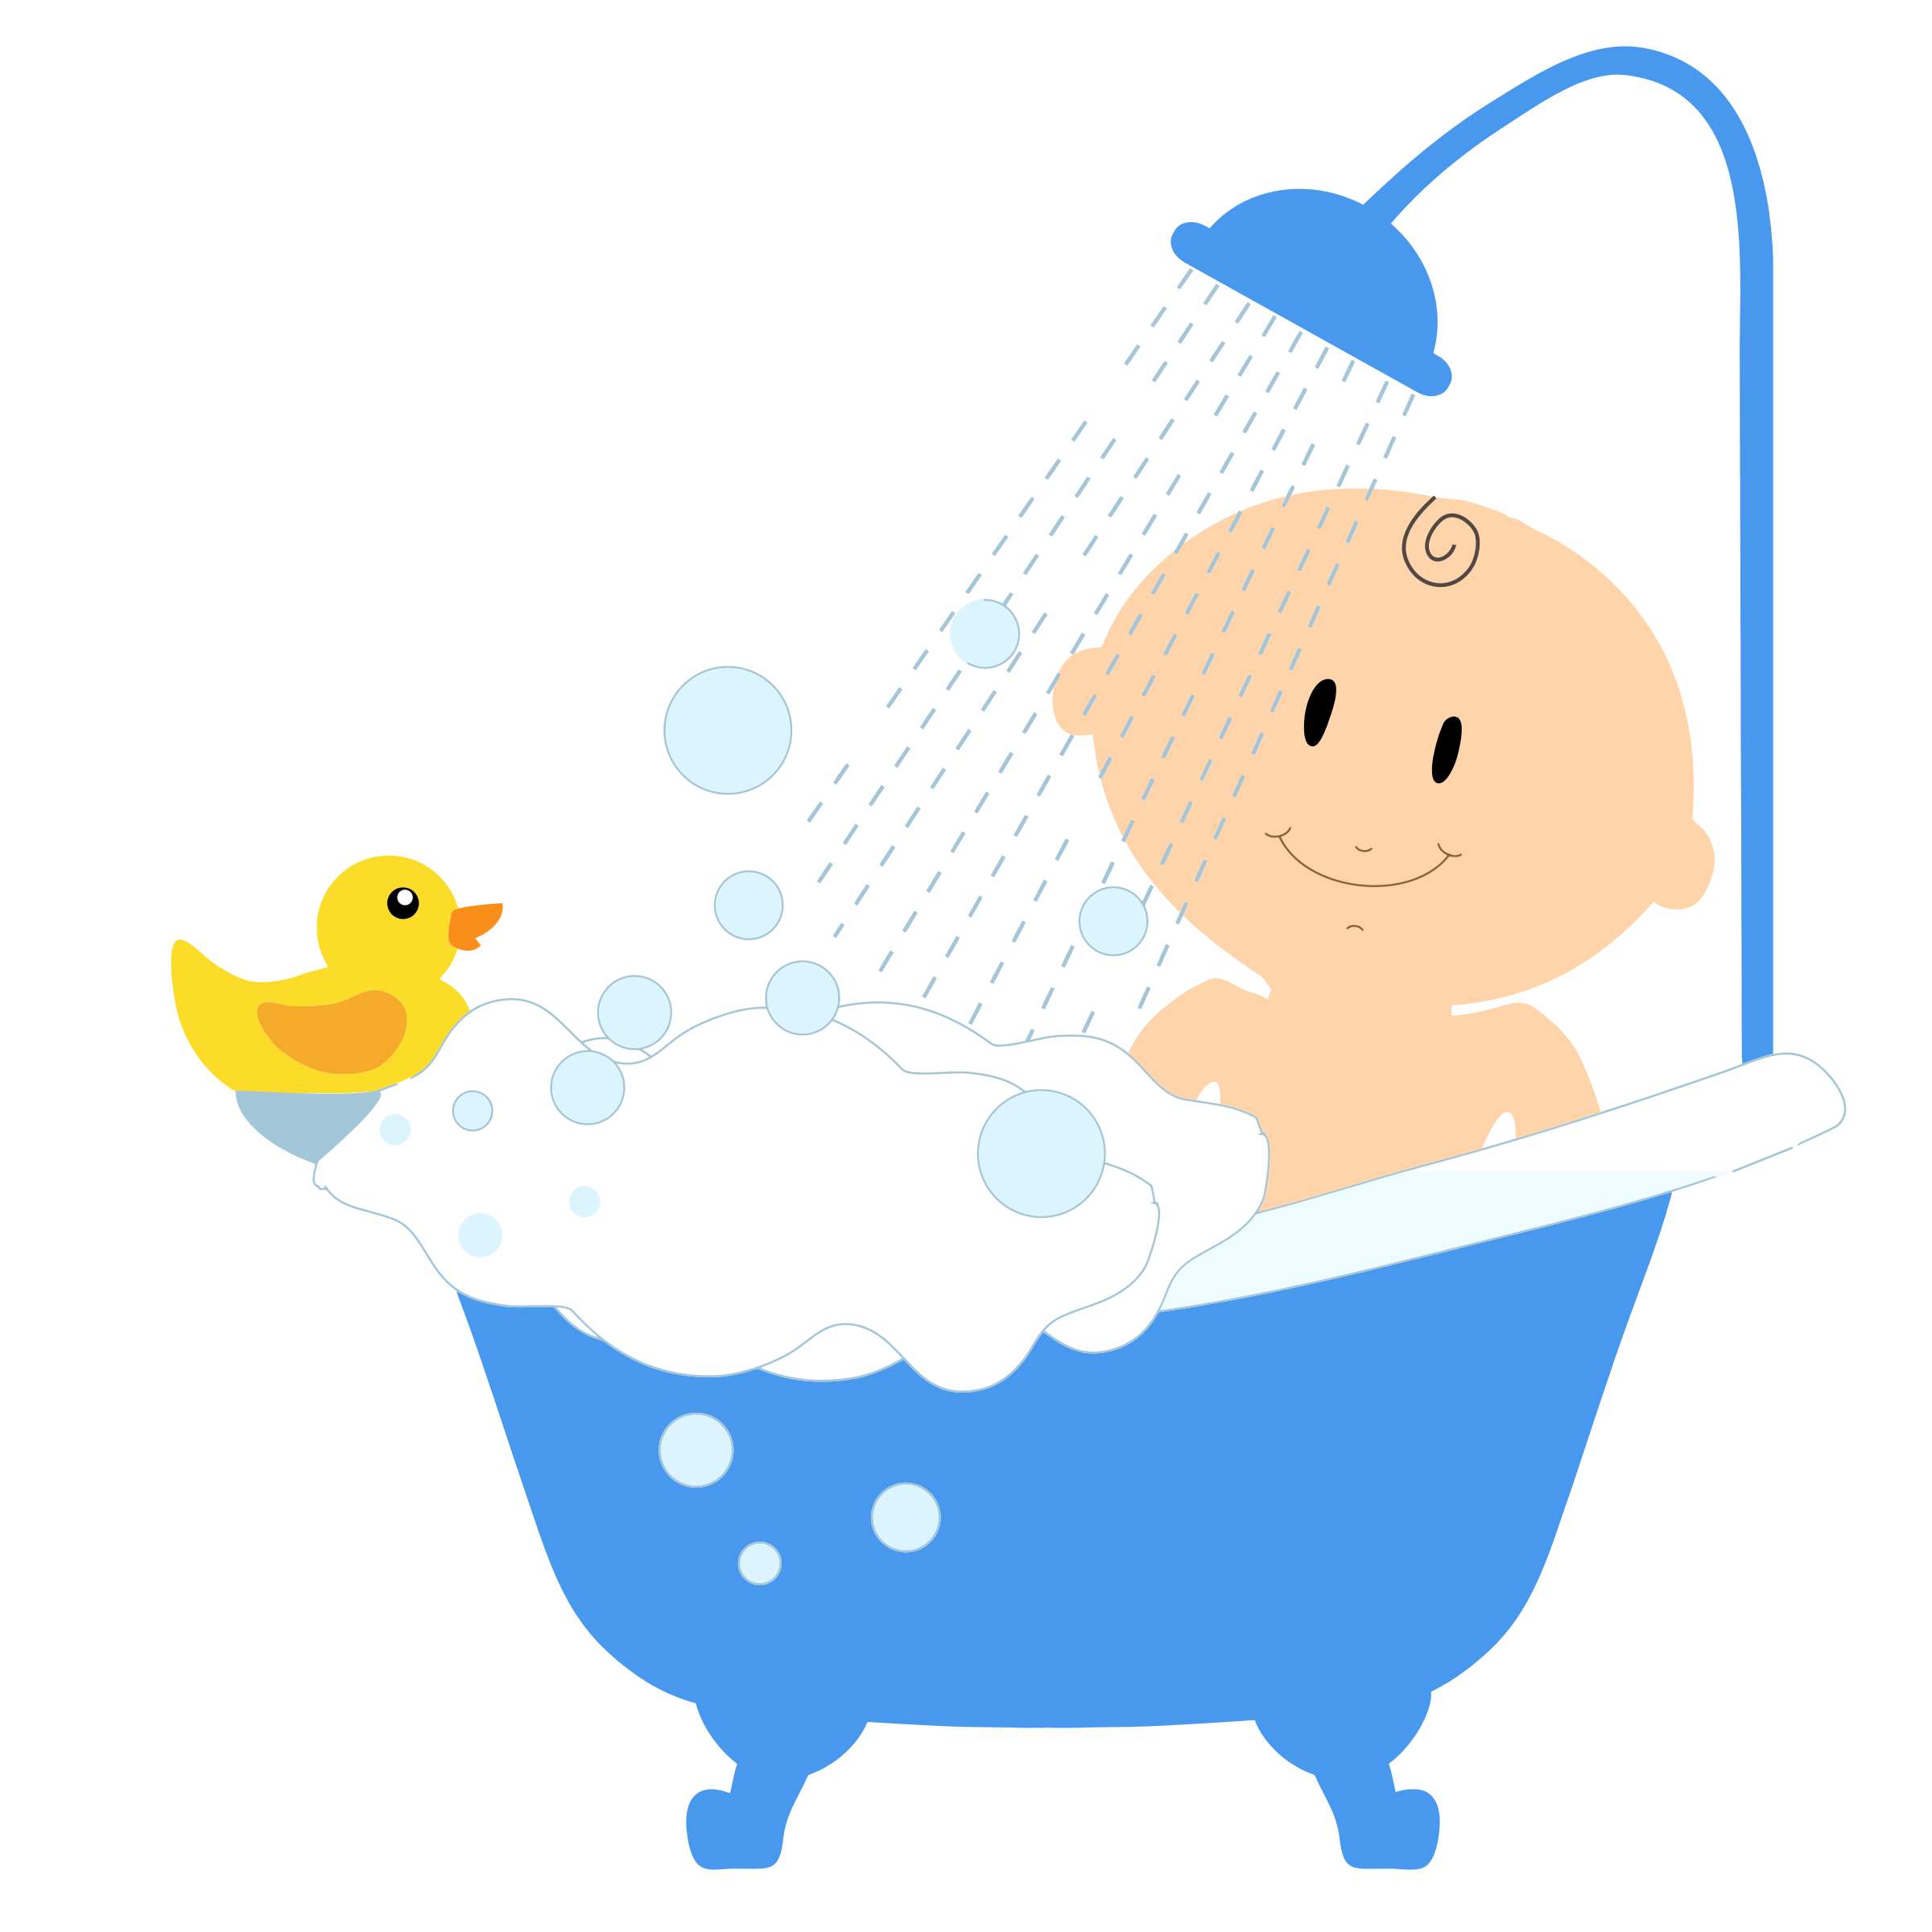 bath clipart baby boy